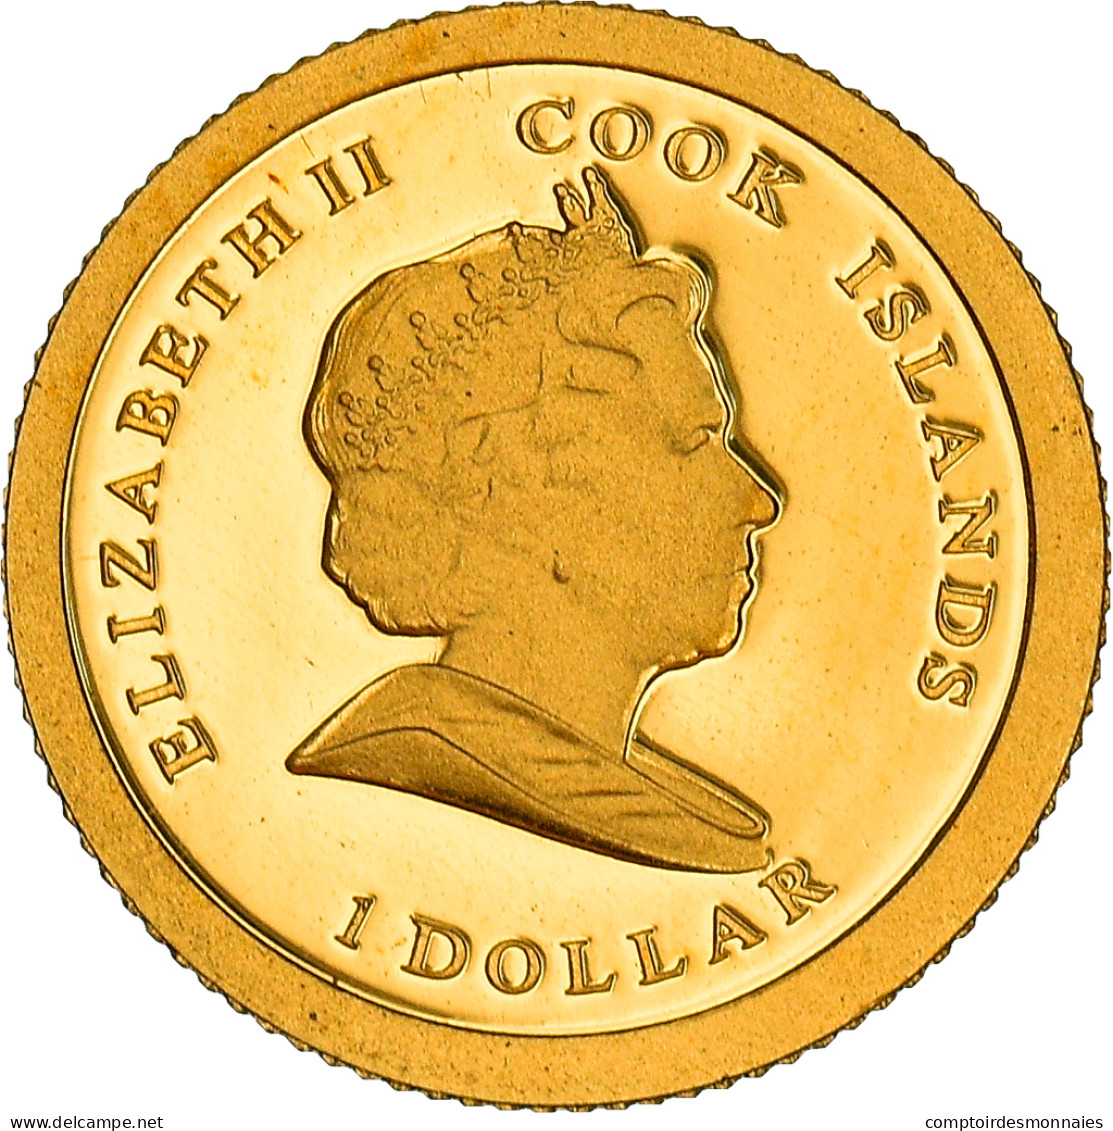 Monnaie, Îles Cook, Elizabeth II, Pape Benoit XVI, Dollar, 2009, CIT, Proof - Cook Islands